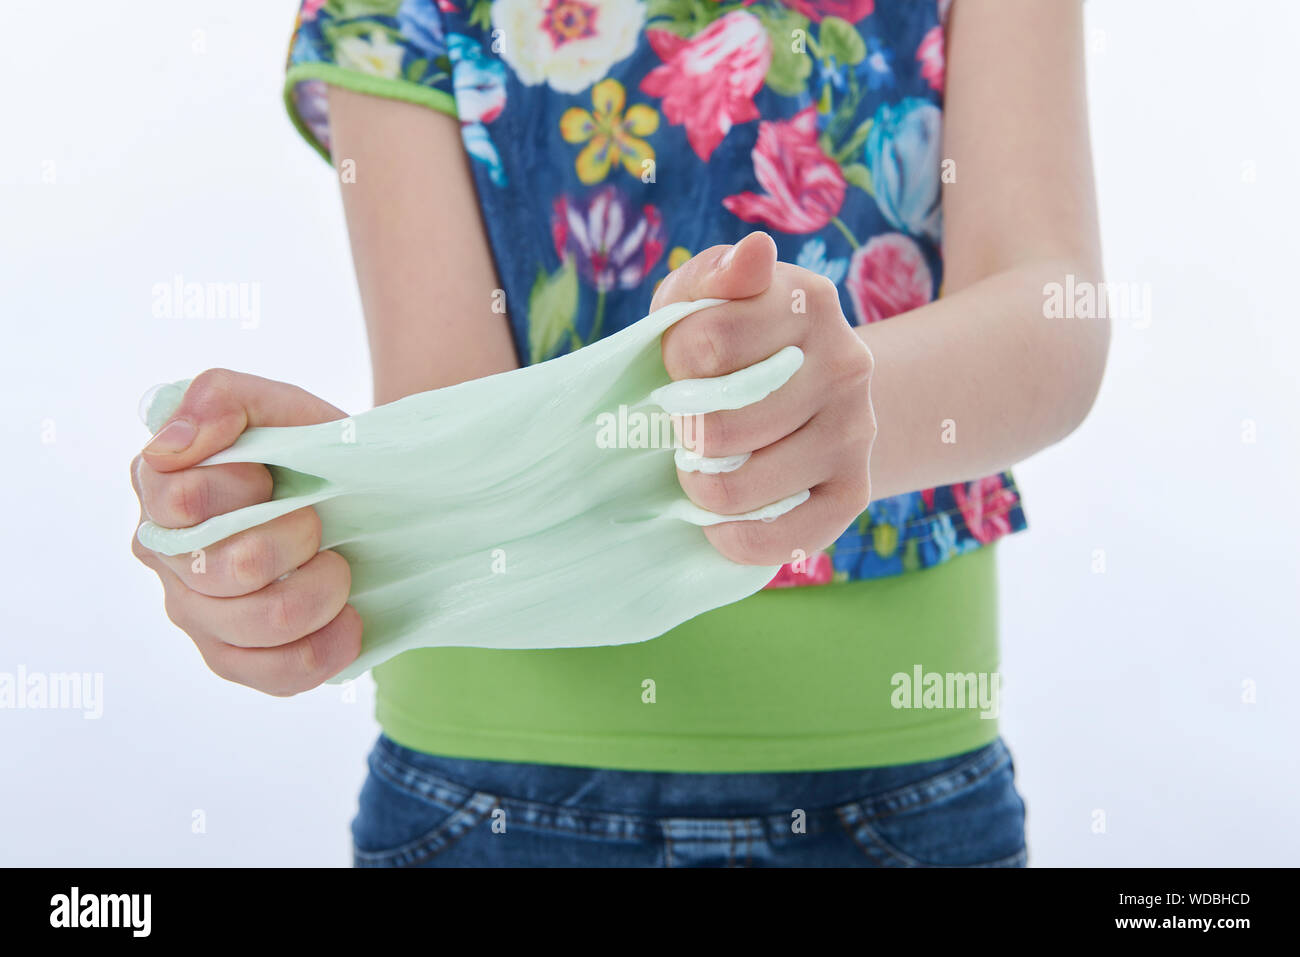 Jeune fille jouant avec du mucus. Image horizontale. Fond blanc Banque D'Images